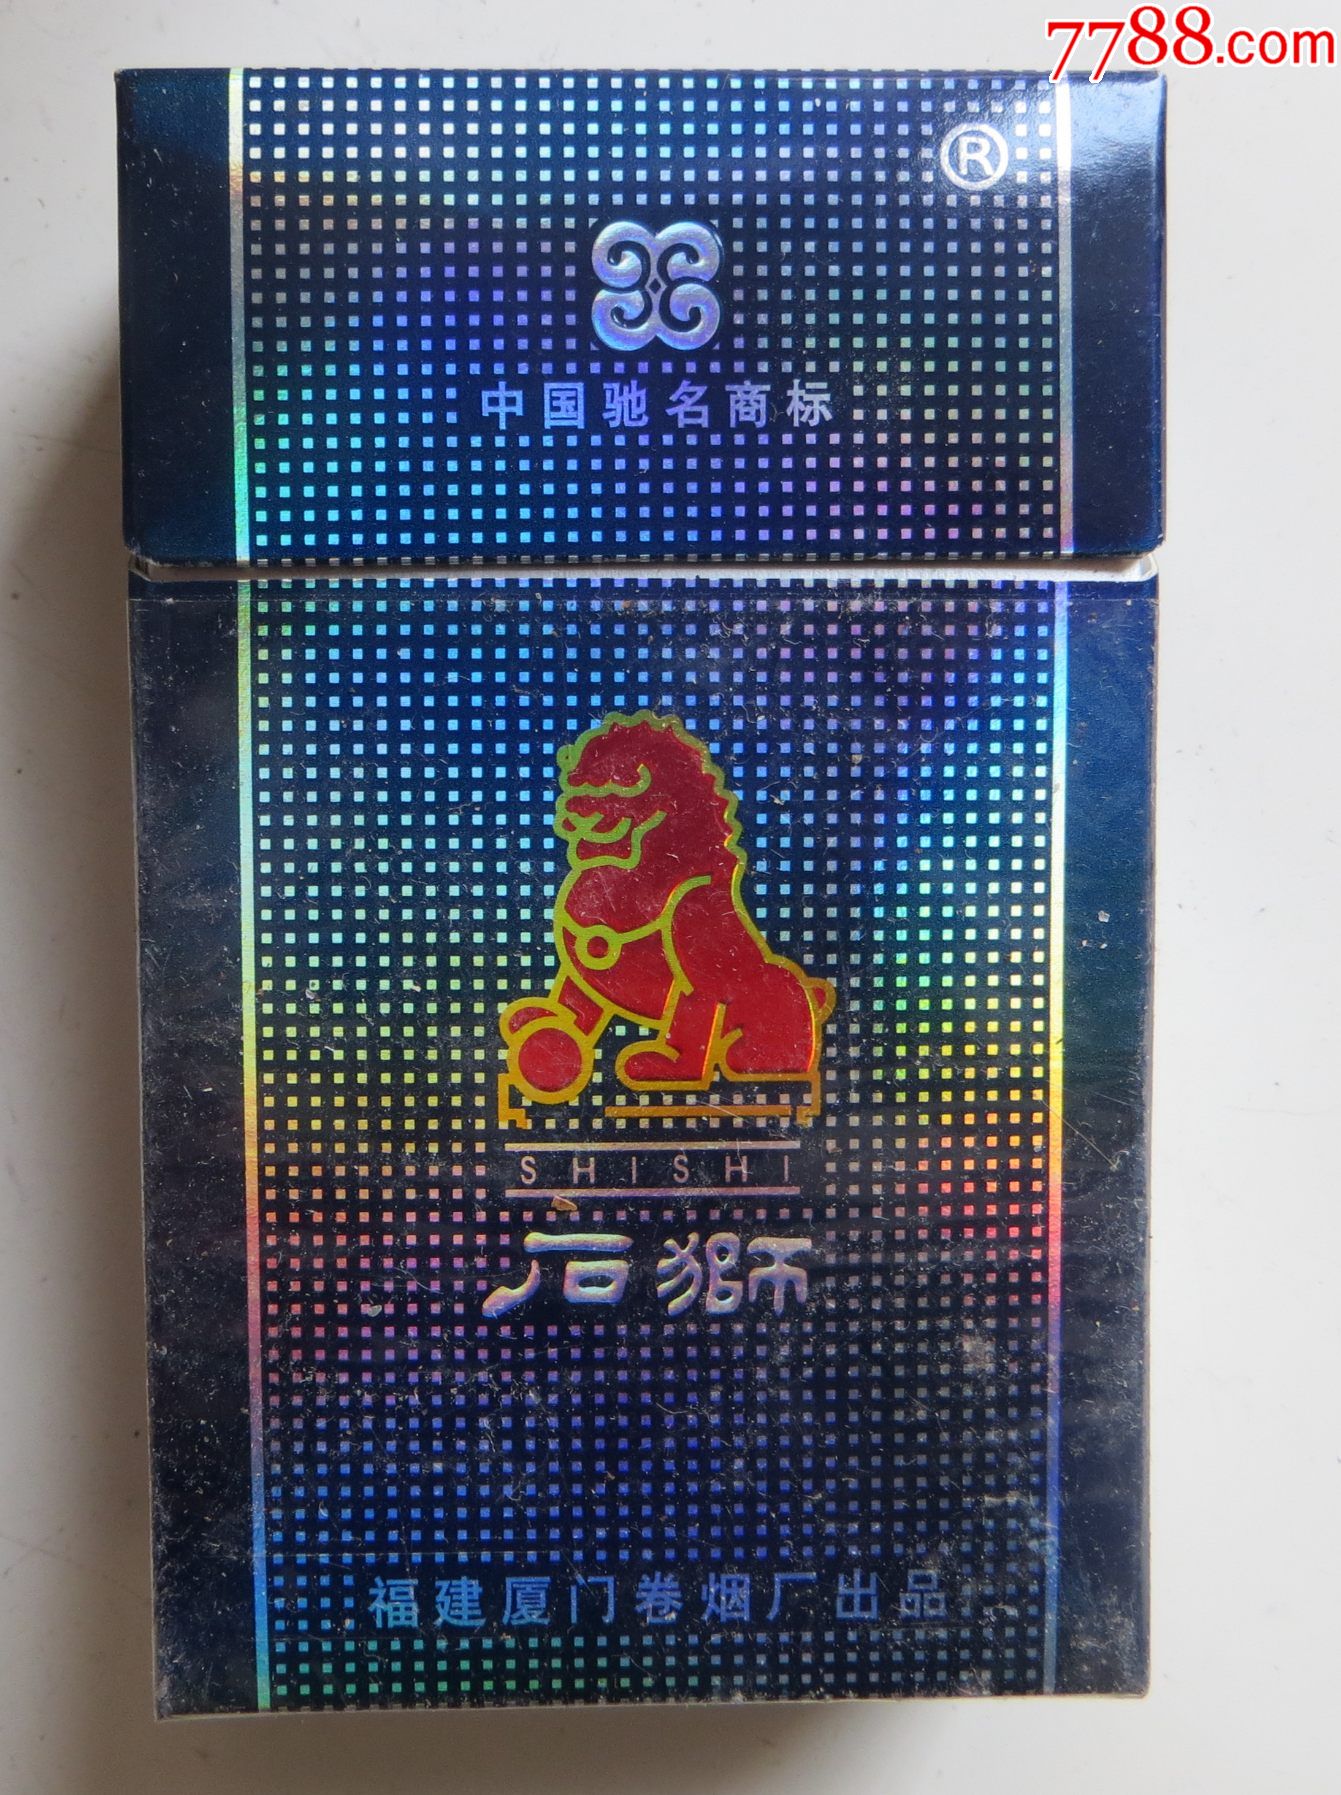 石狮香烟价格表图蓝盒图片